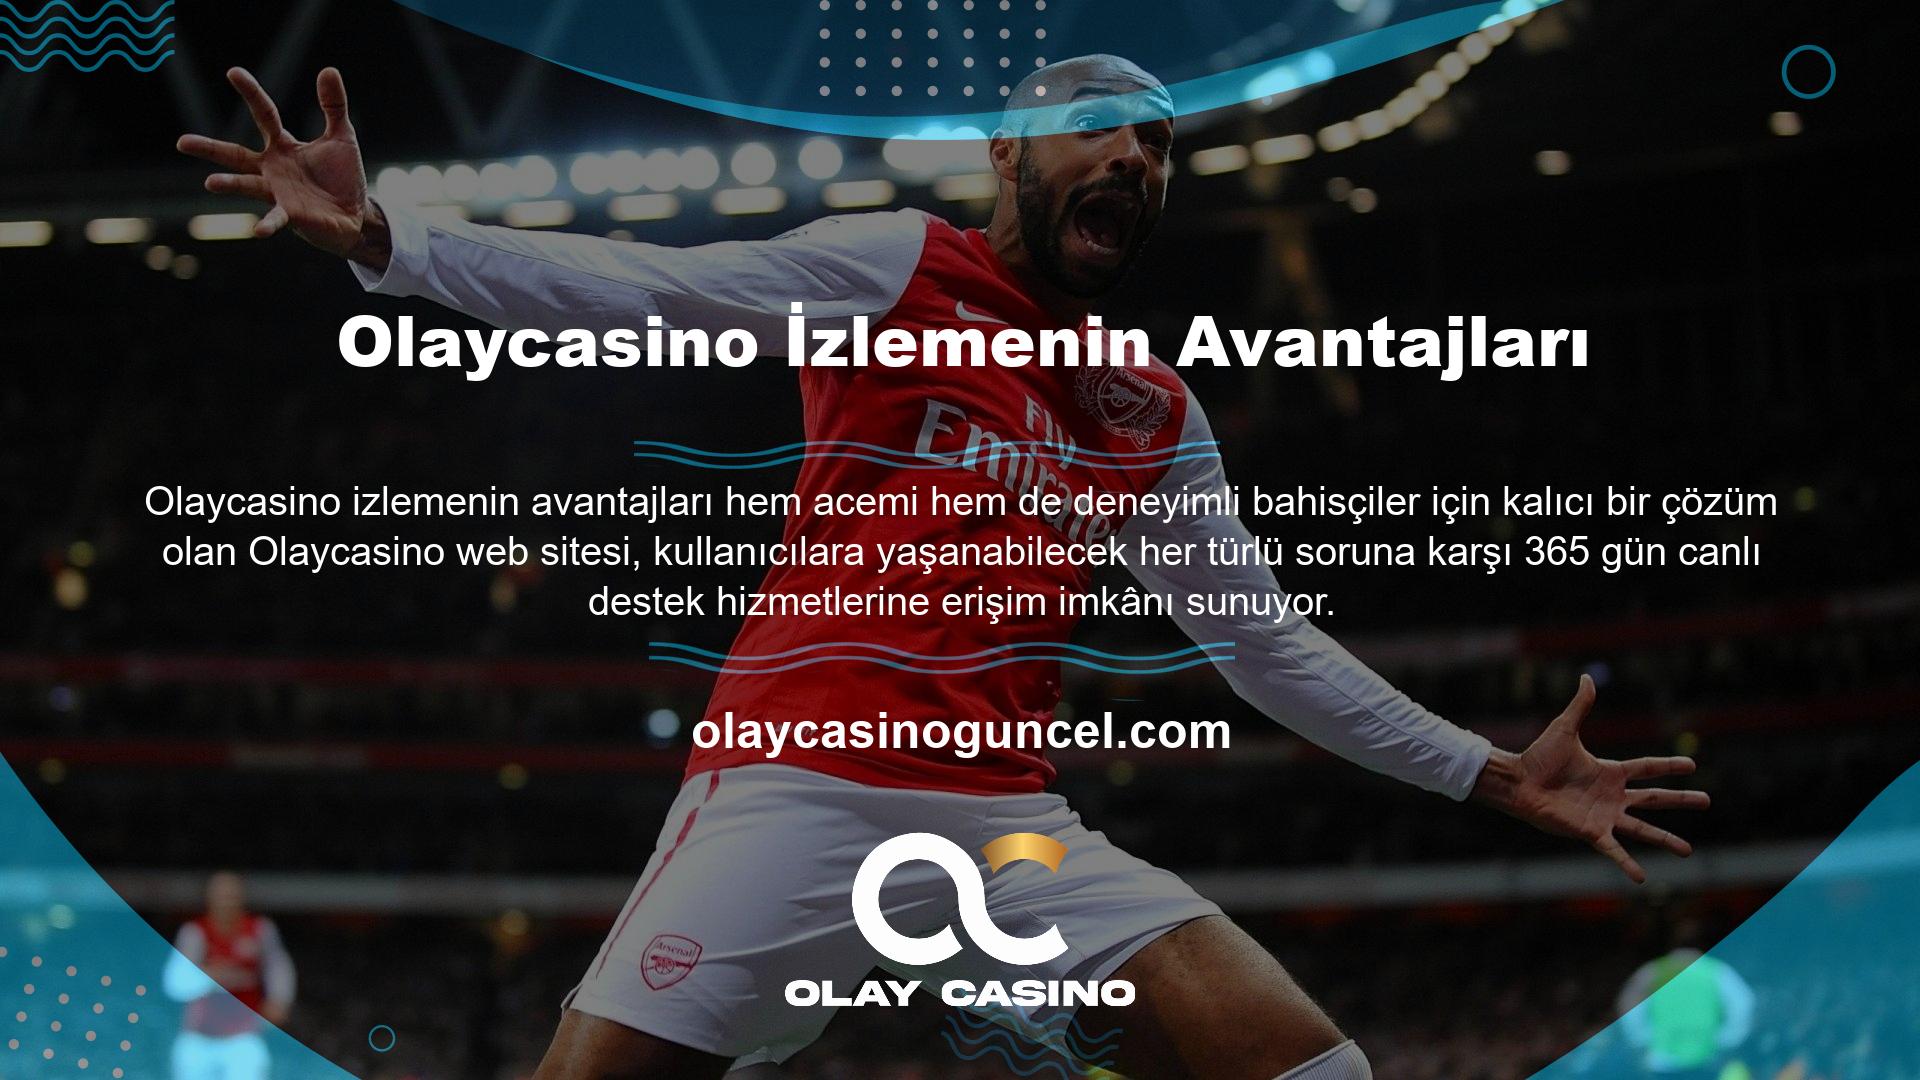 Olaycasino programı, sitenin sağ tarafında canlı destek sağlayan bir çevrimiçi bahis ve casino deneyimidir